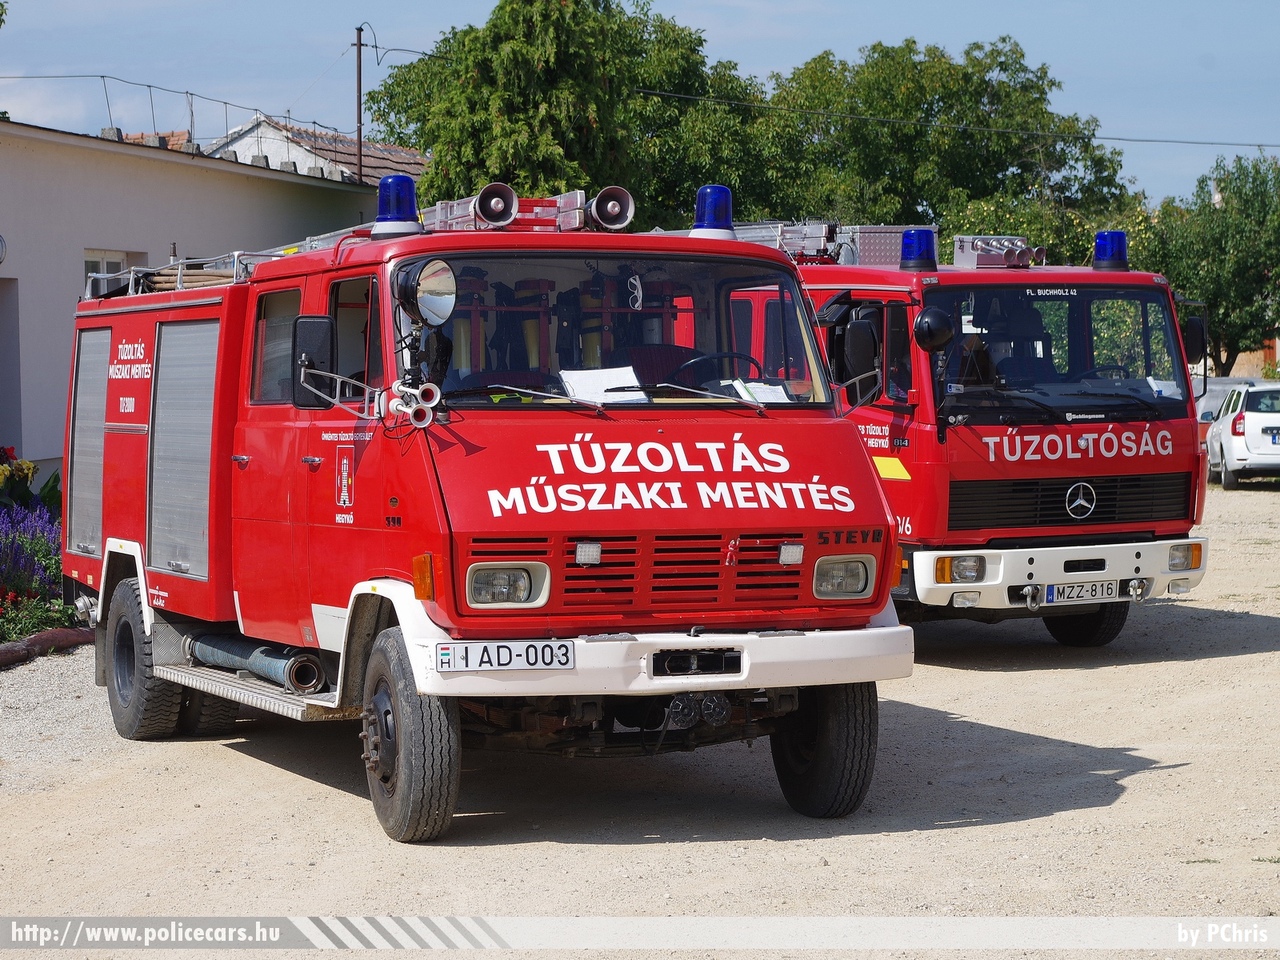 Steyr 590, Mercedes 814 LF8/6, Önkéntes Tûzoltó Egyesület Hegykõ, fotó: PChris
Keywords: tûzoltó tûzoltóautó tûzoltóság magyar Magyarország ÖTE hungarian Hungary fire firetruck IAD-003 MZZ-816